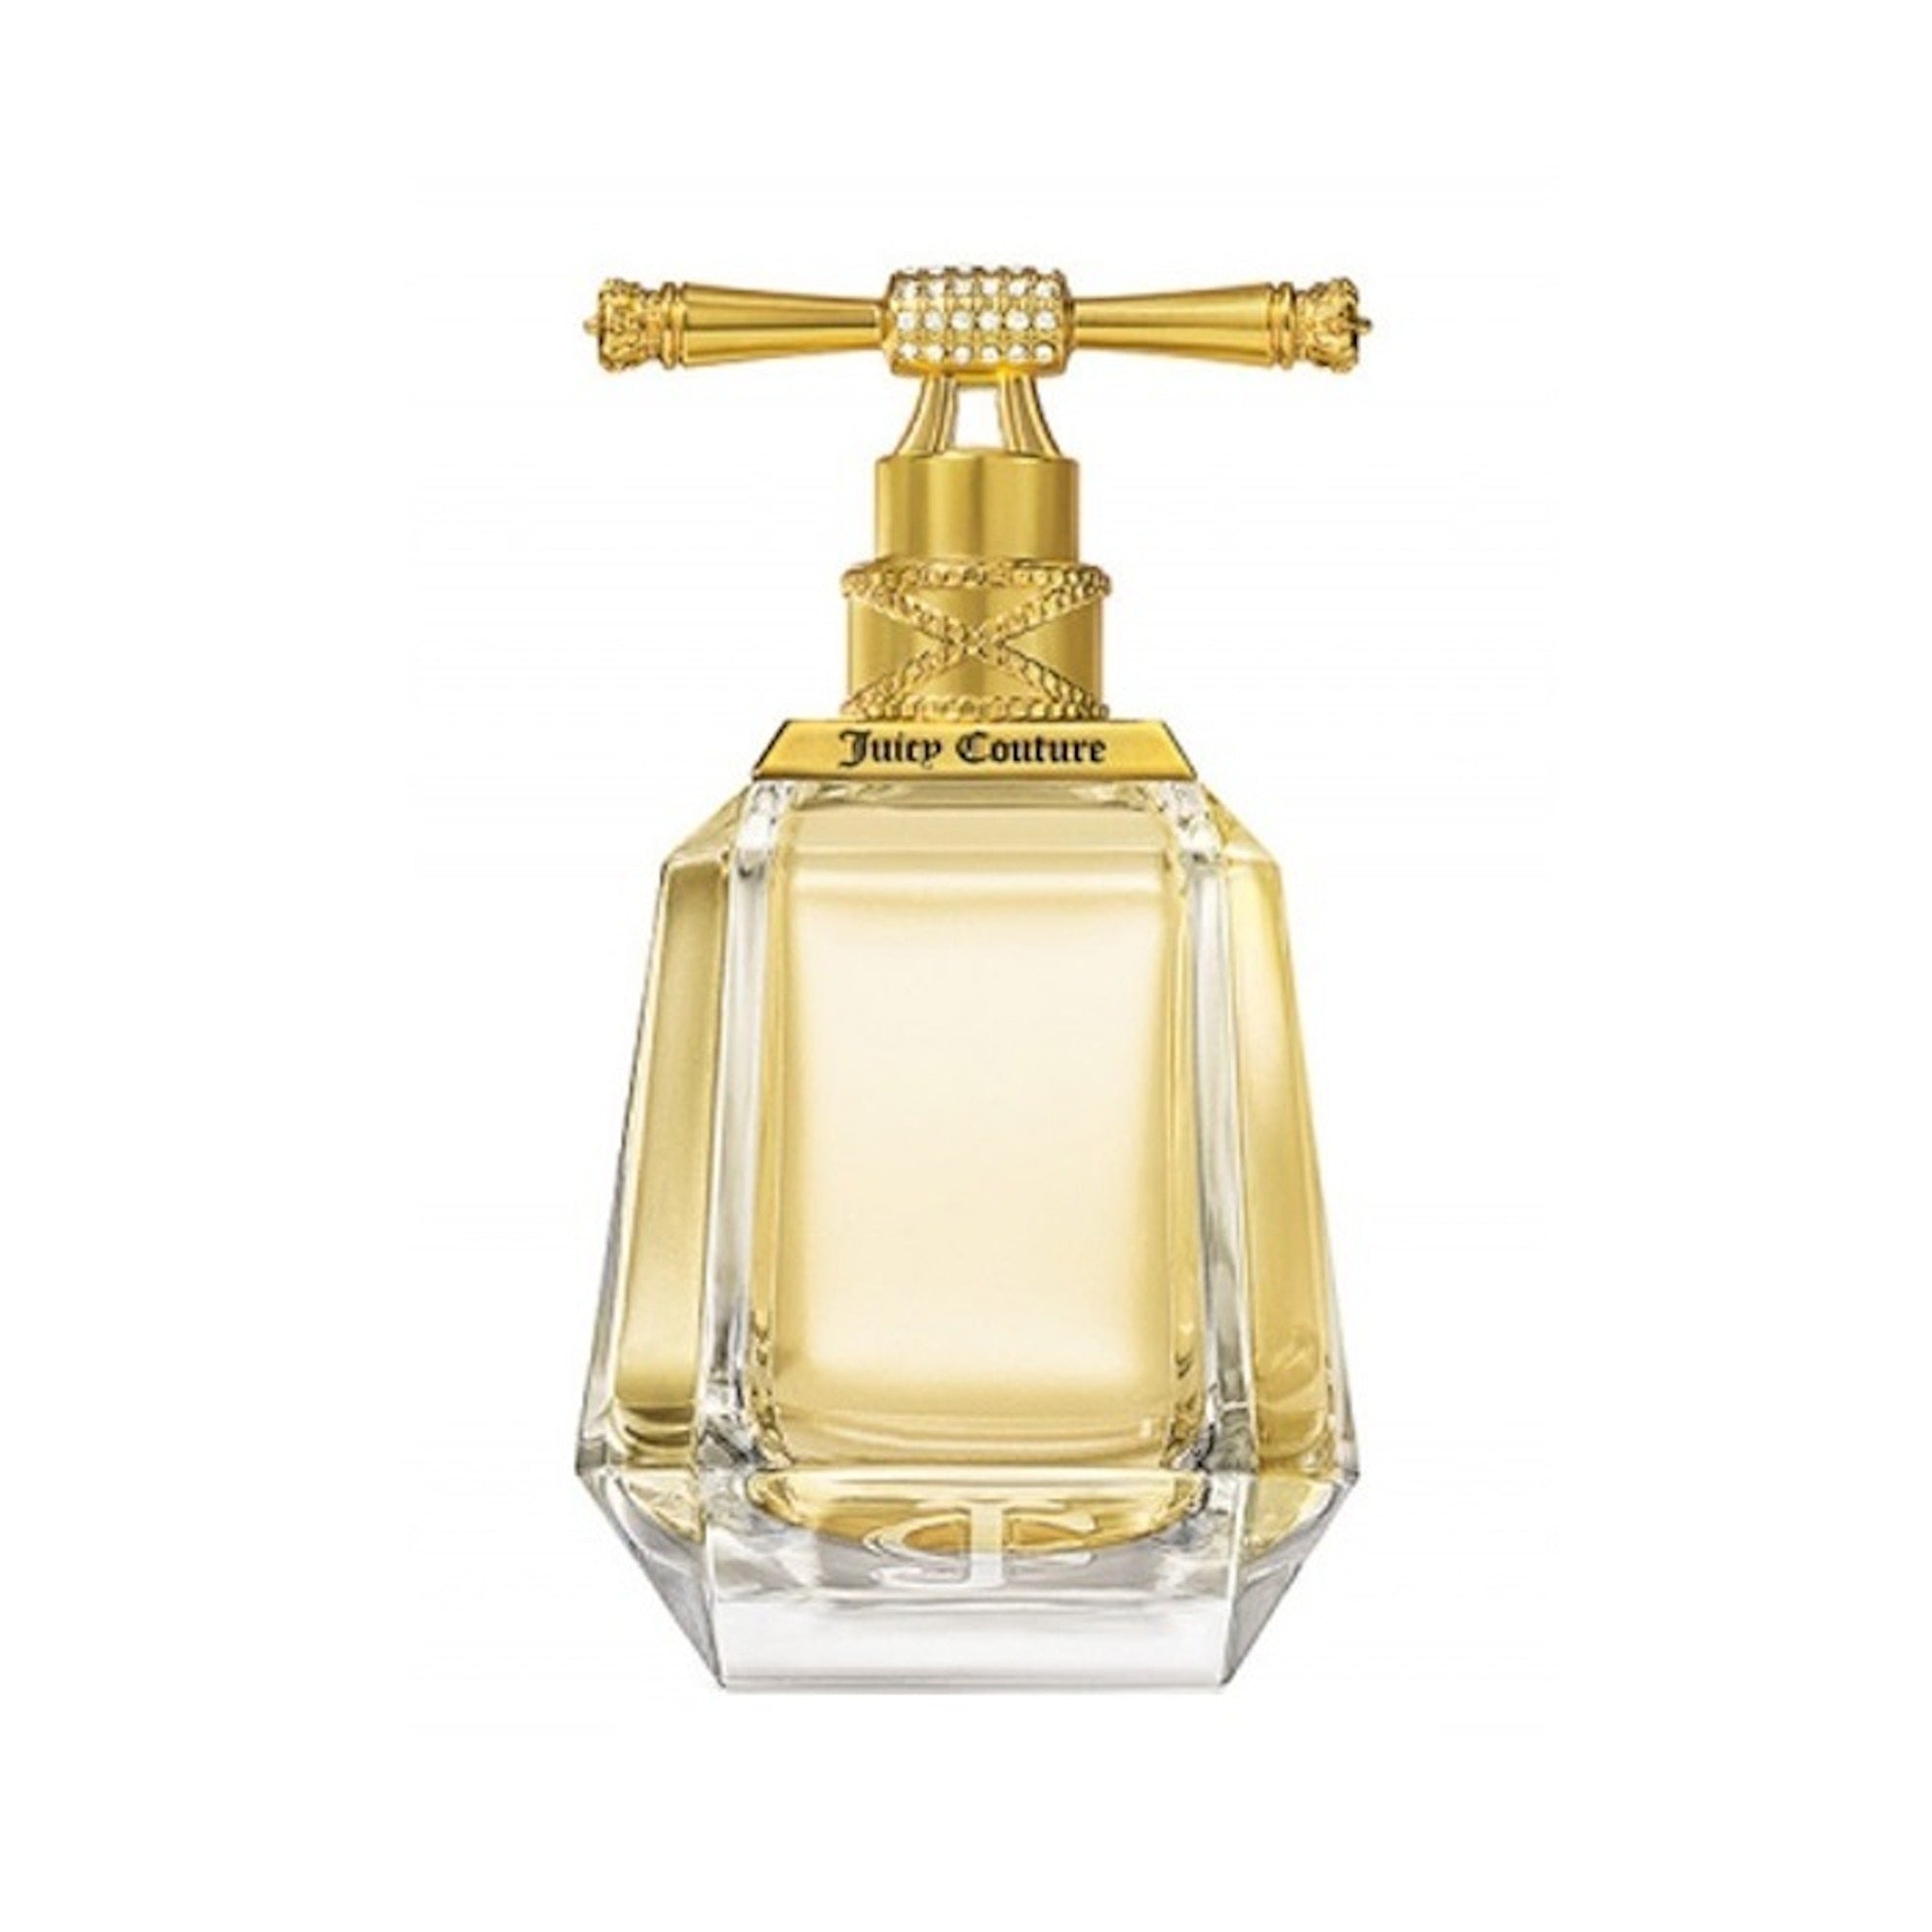 Juicy Couture Viva La Juicy Petals Please EDP 3.4 oz / 100 ml Spray For  Women - fragrances4ever.com